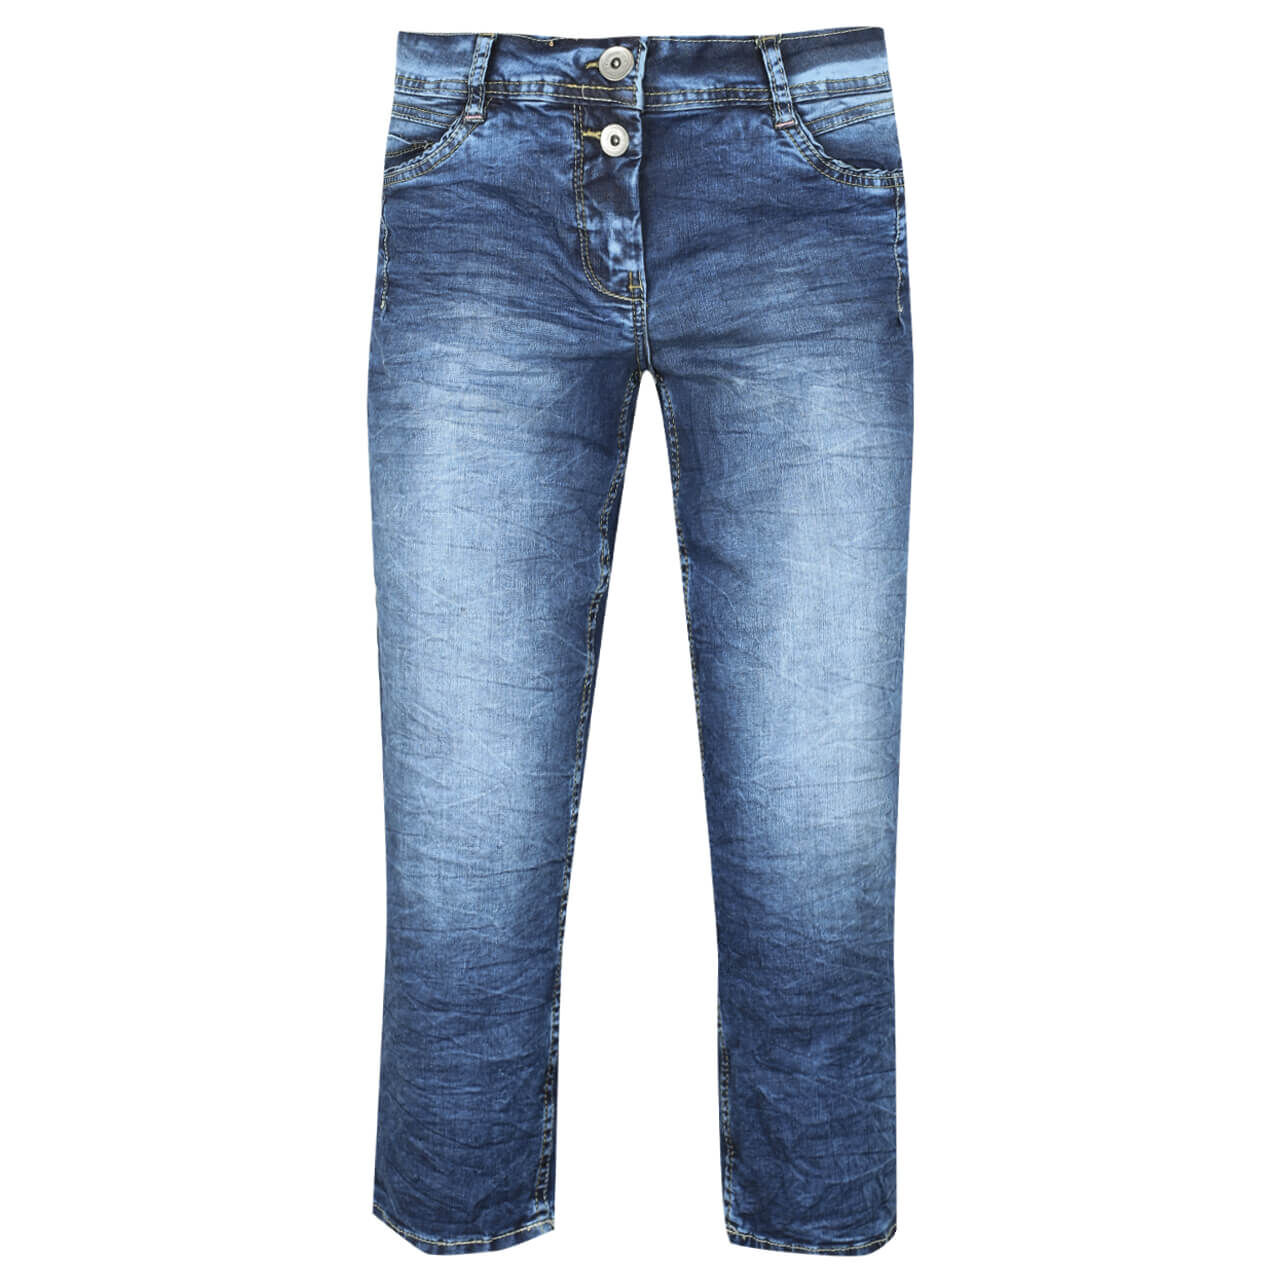 Cecil Scarlett 3/4 Jeans für Damen in Blau verwaschen, FarbNr.: 10240